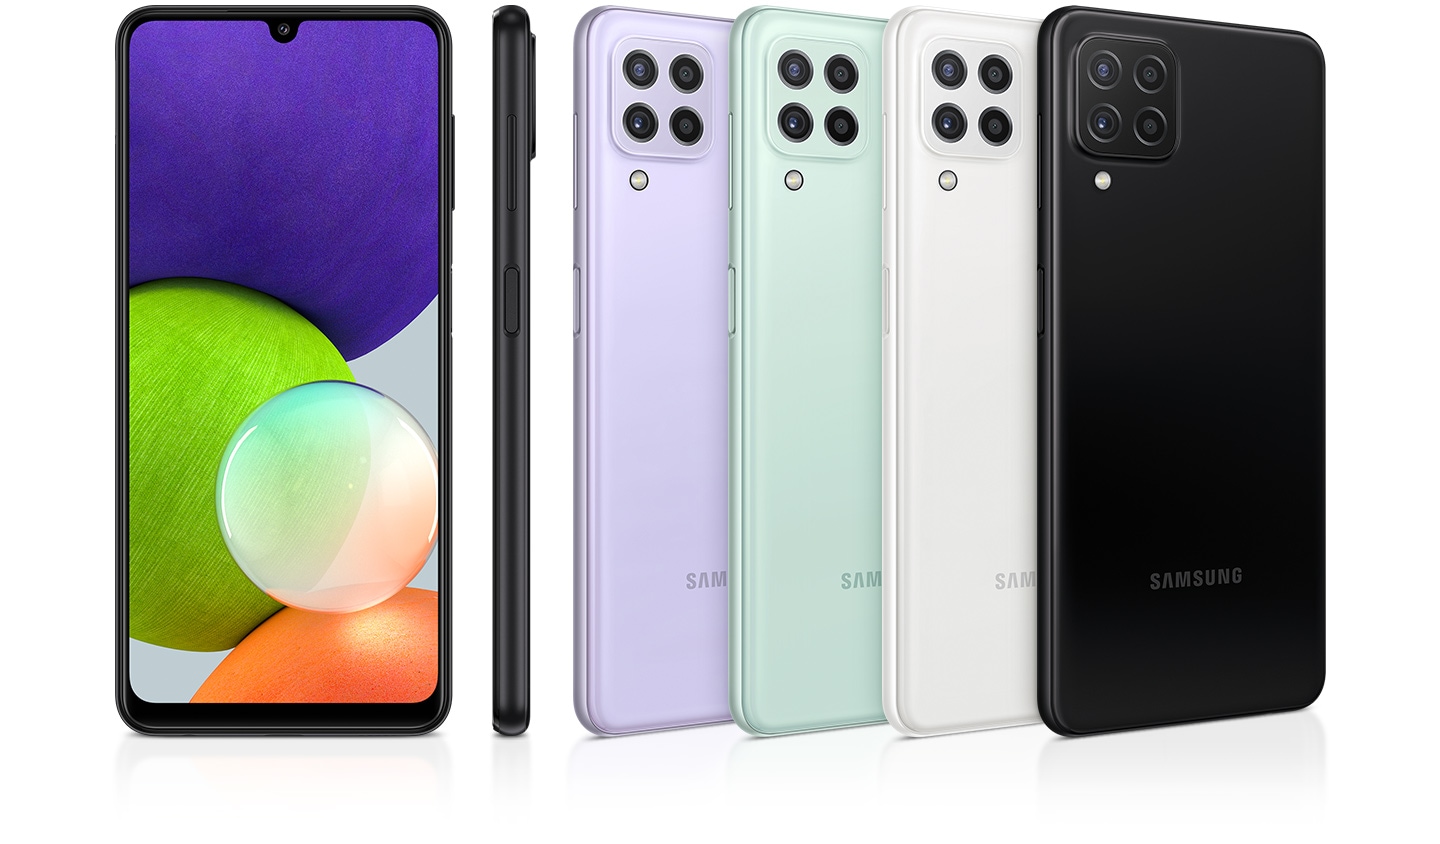 Vidíme zadní strany 4 lesklých smartphonů v barvách black, white, mint a violet, spolu s profilem a čelním pohledem zvýrazňujícím prvotřídní lesklou povrchovou úpravu.